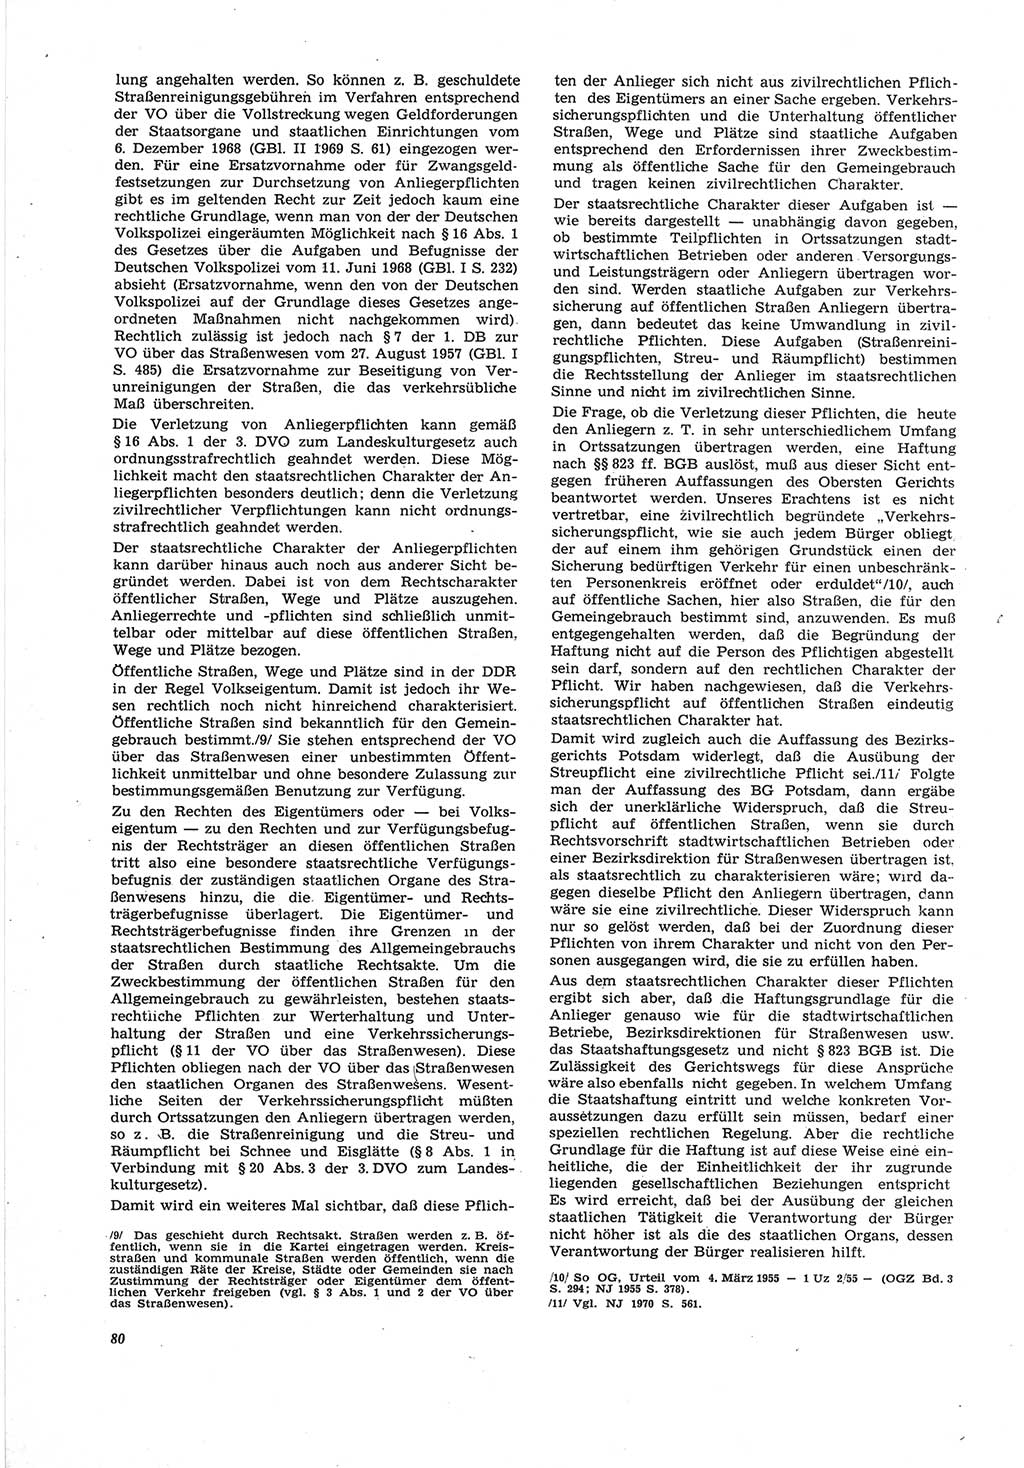 Neue Justiz (NJ), Zeitschrift für Recht und Rechtswissenschaft [Deutsche Demokratische Republik (DDR)], 25. Jahrgang 1971, Seite 80 (NJ DDR 1971, S. 80)